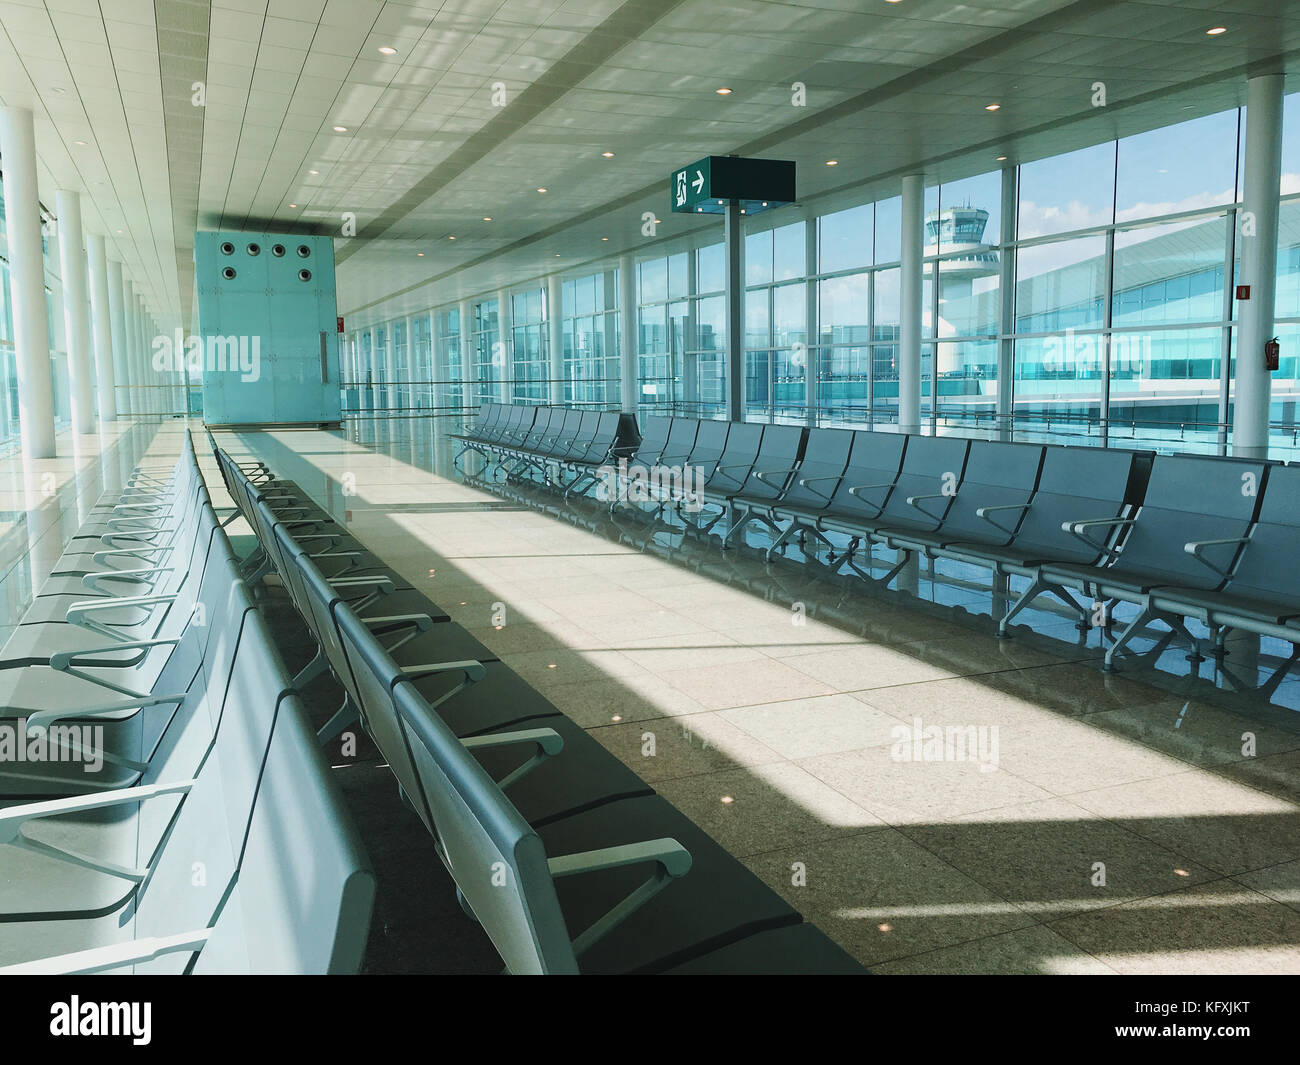 Una imagen de una nueva sala de embarque en la terminal del aeropuerto. asientos vacíos. Foto de stock